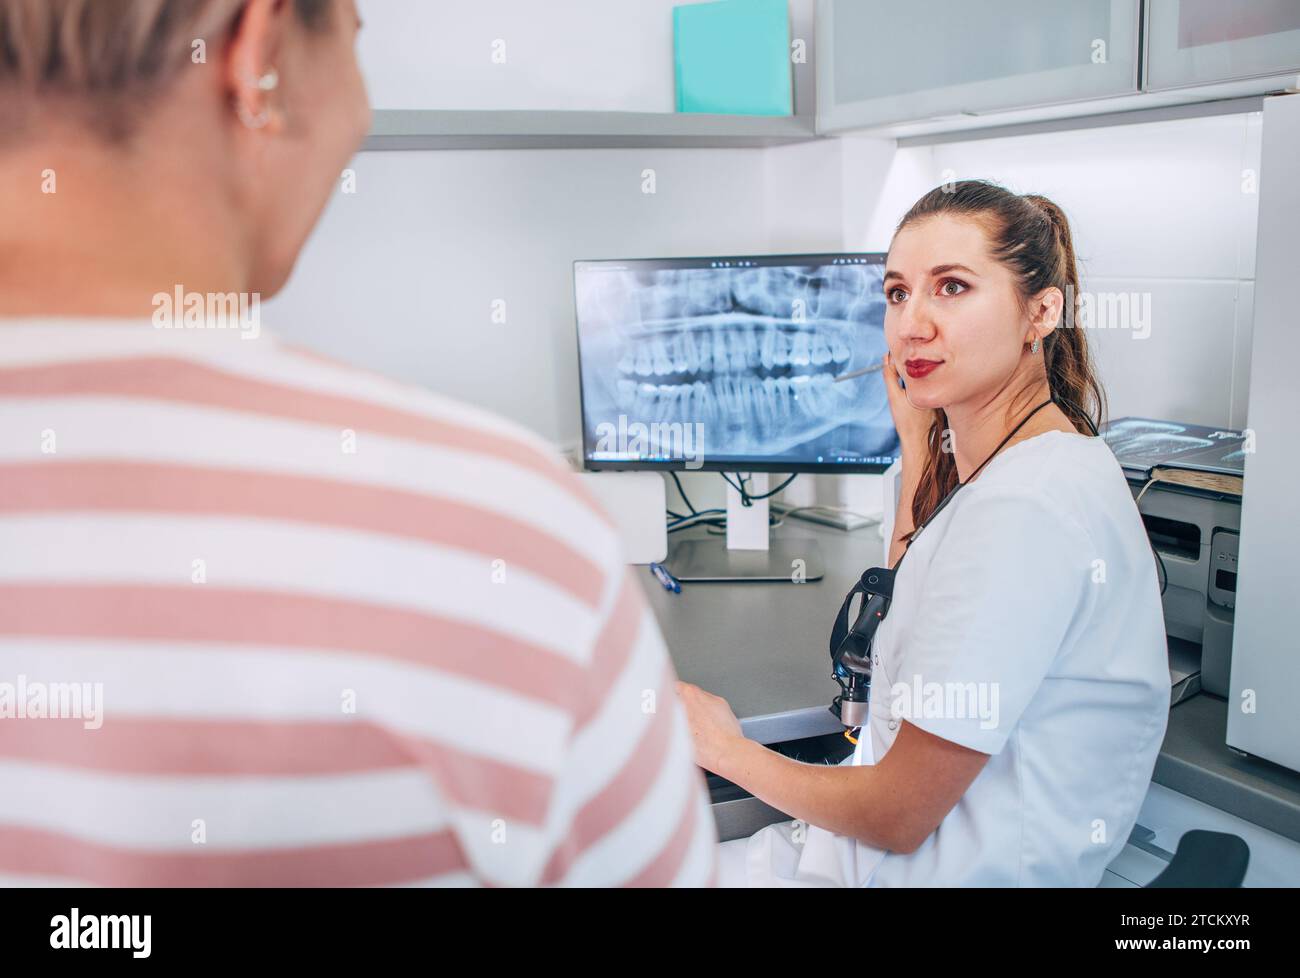 Zahnarztin in Uniform mit intraoraler 3D-Röntgenaufnahme des Patienten auf PC-Bildschirm. Zahnärztlicher Klinikpatient besucht moderne medizinische Station. Hea Stockfoto